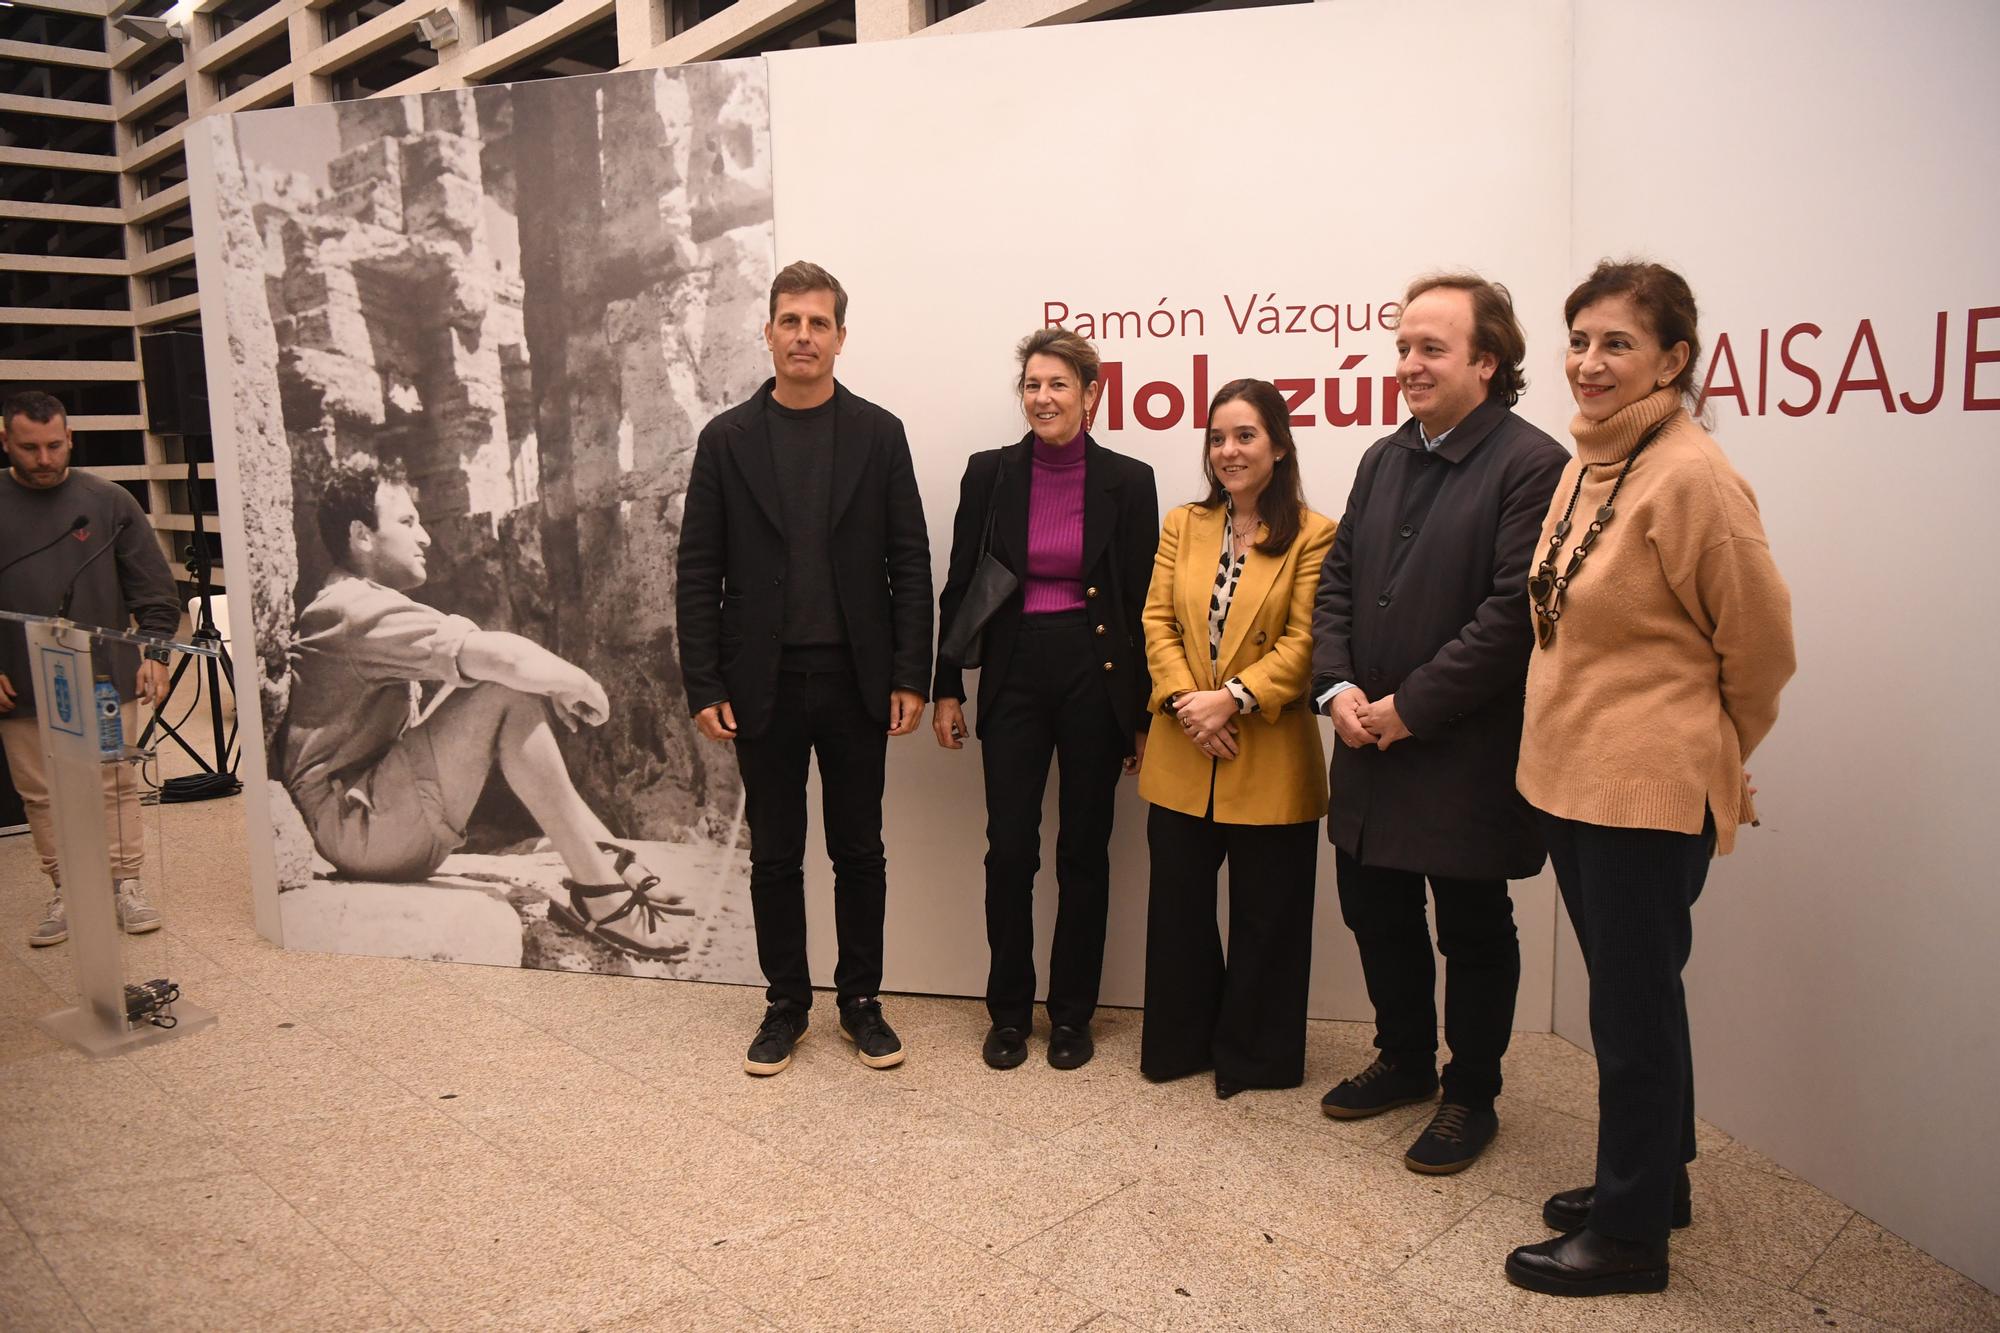 'Paisajes', la exposición en A Coruña que repasa la obra del arquitecto Ramón Vázquez Molezún